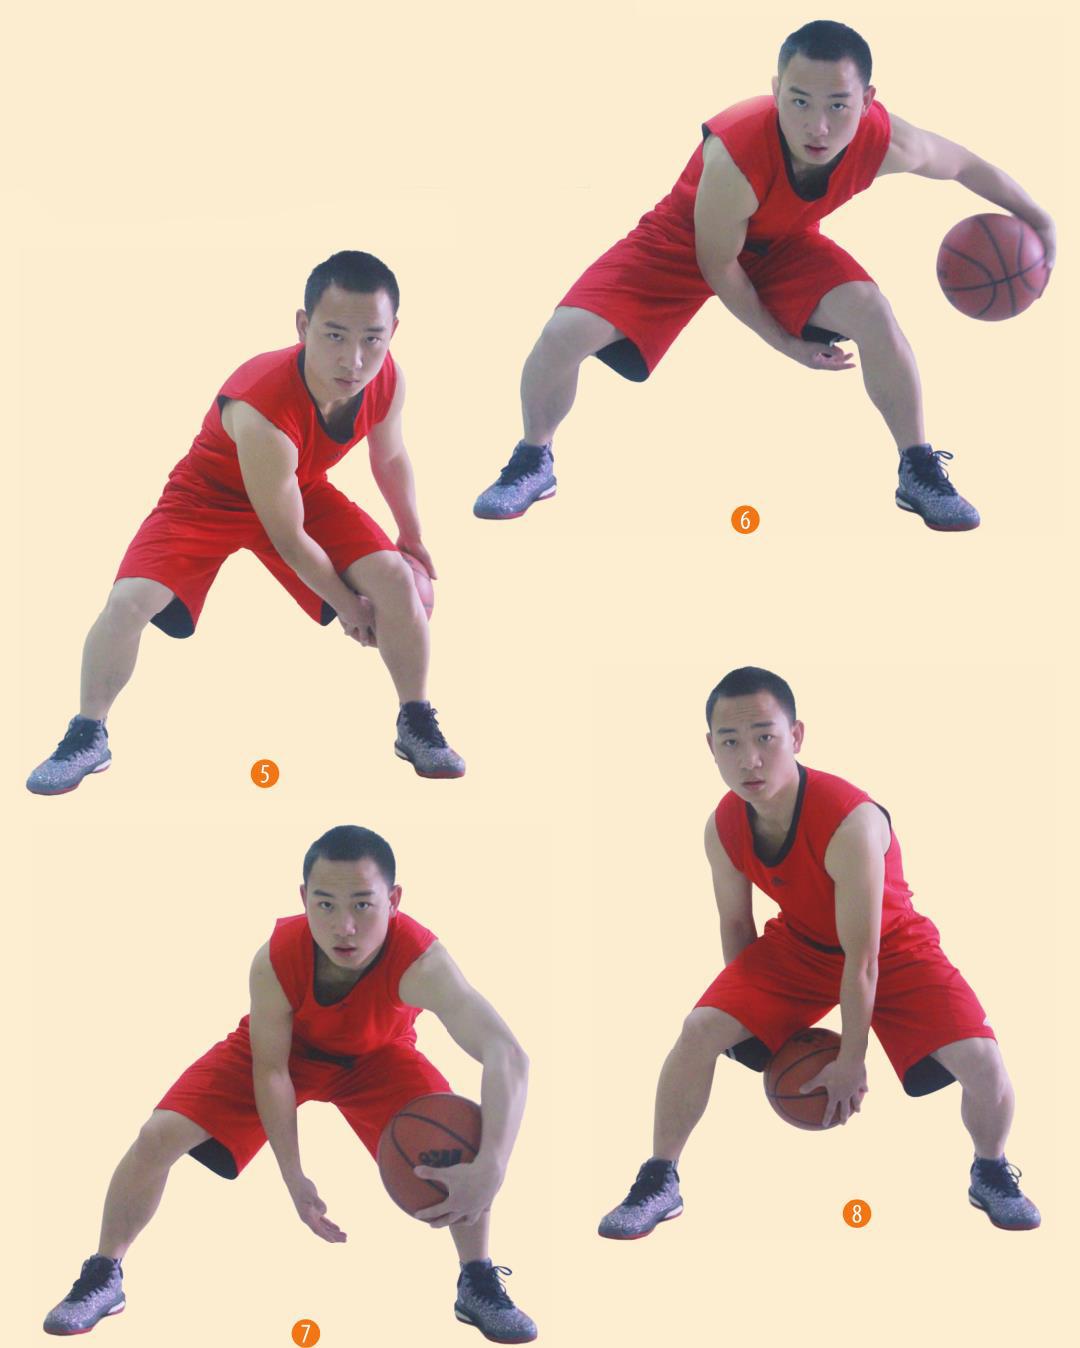 篮球3人8字传球示意图图片